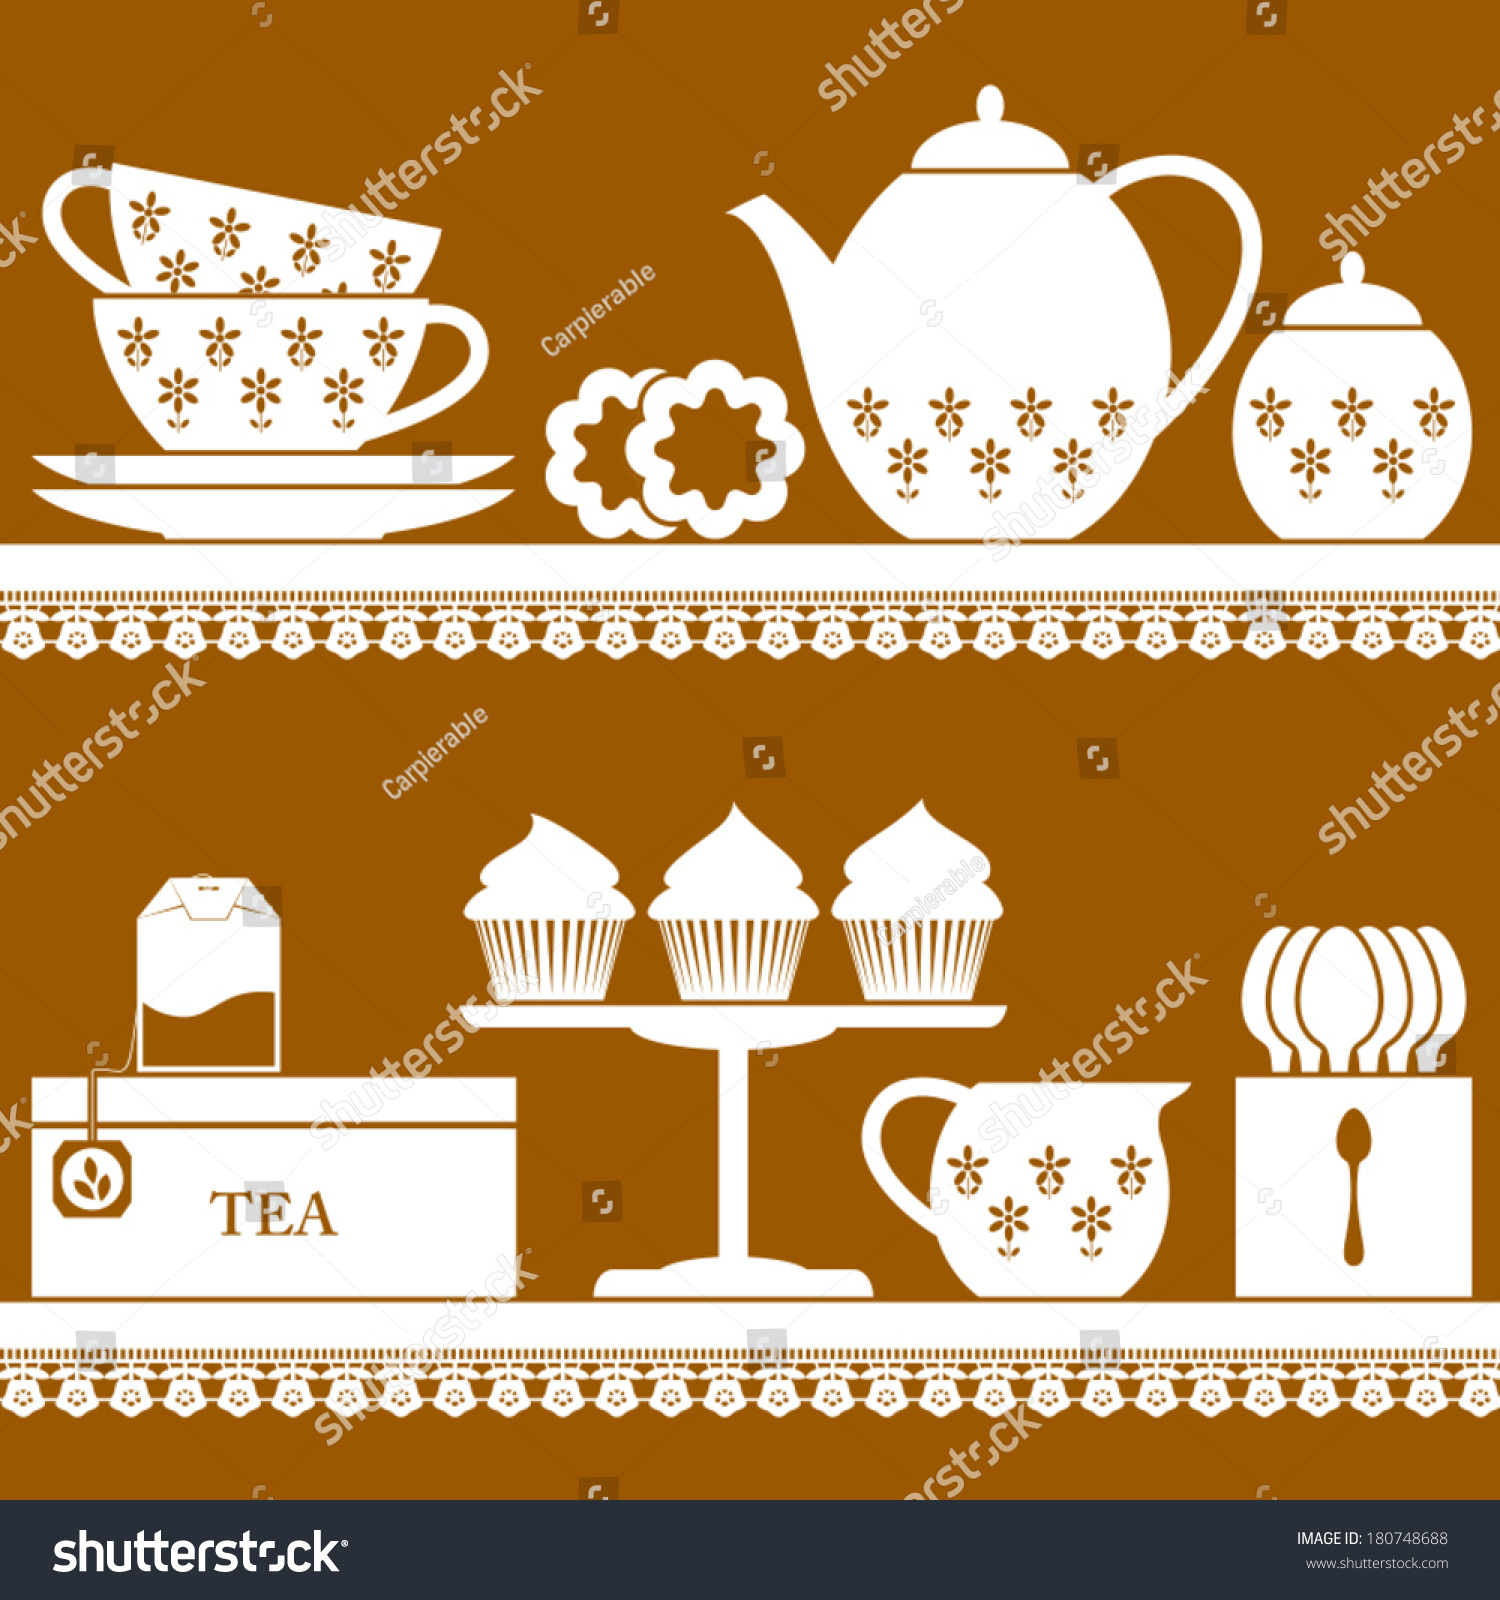 Plain coloured tea set with tea bag, cupcake and cookies #180748688